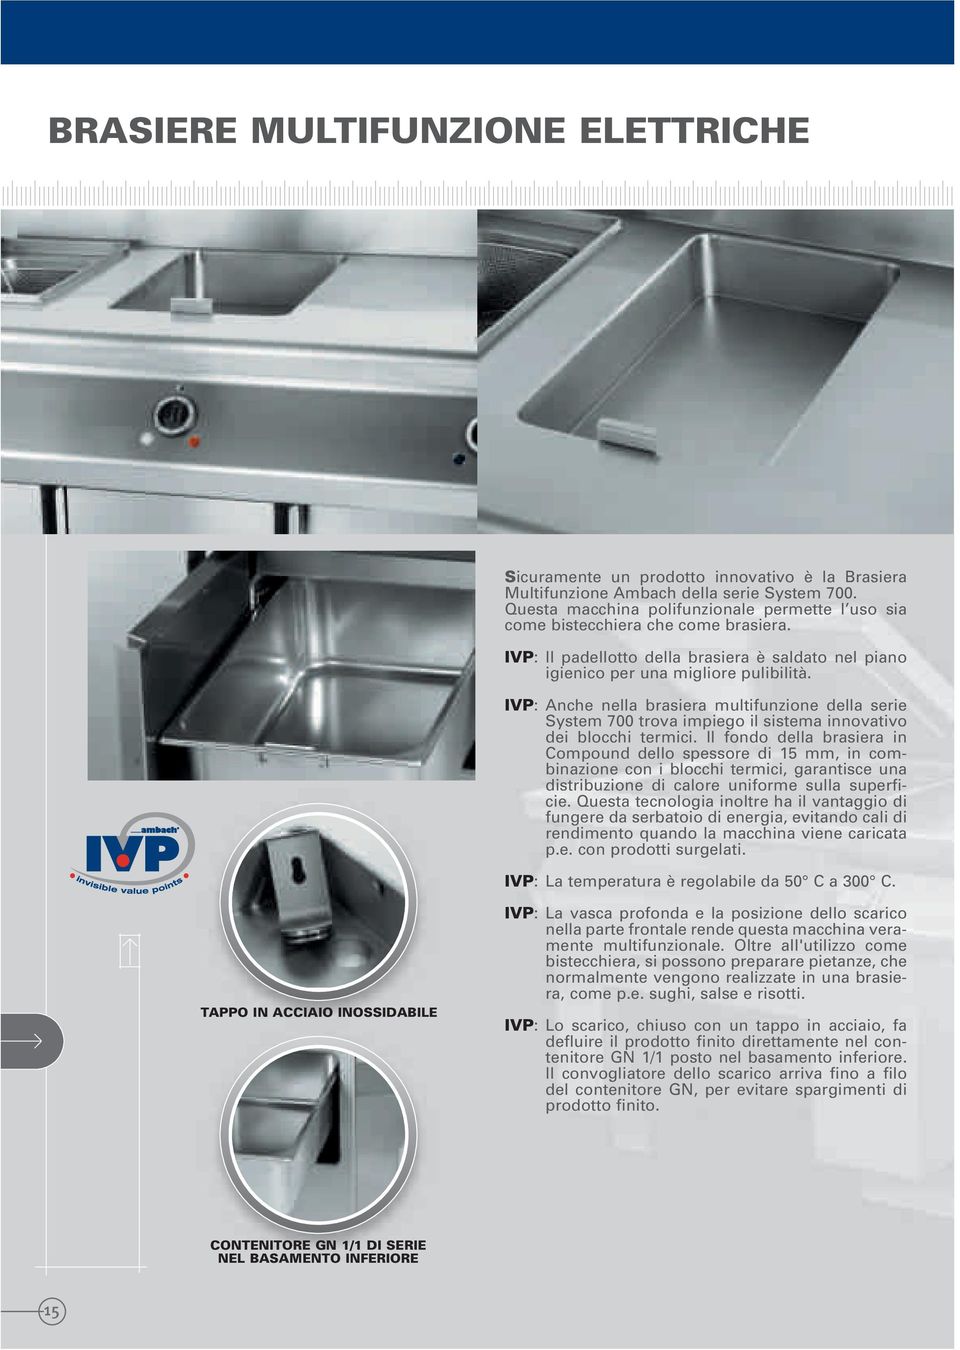 IVP: Anche nella brasiera multifunzione della serie System 700 trova impiego il sistema innovativo dei blocchi termici.